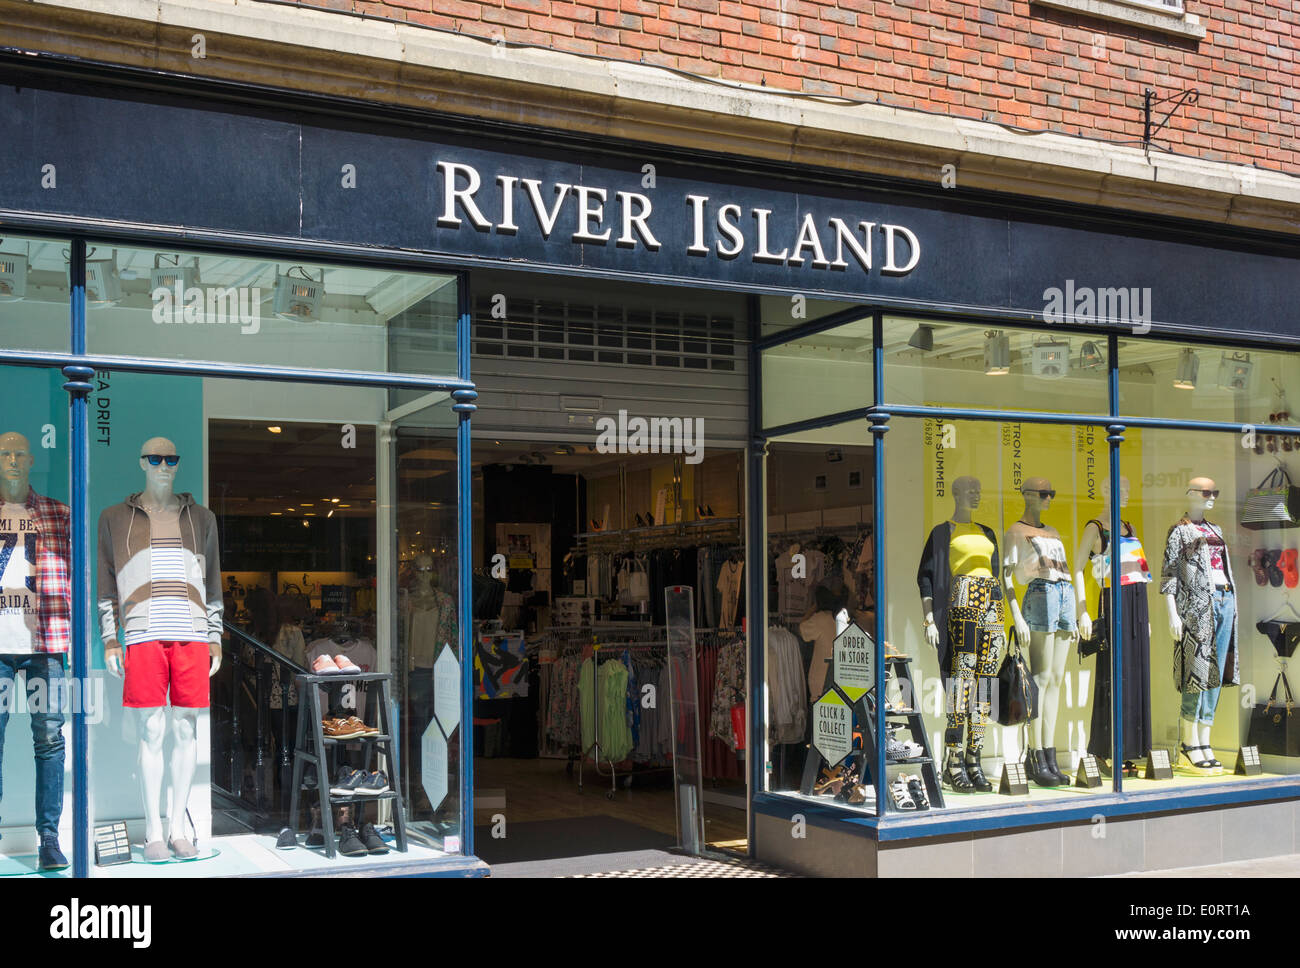 L'île de la rivière de chaîne de magasins de vêtements, England, UK Banque D'Images